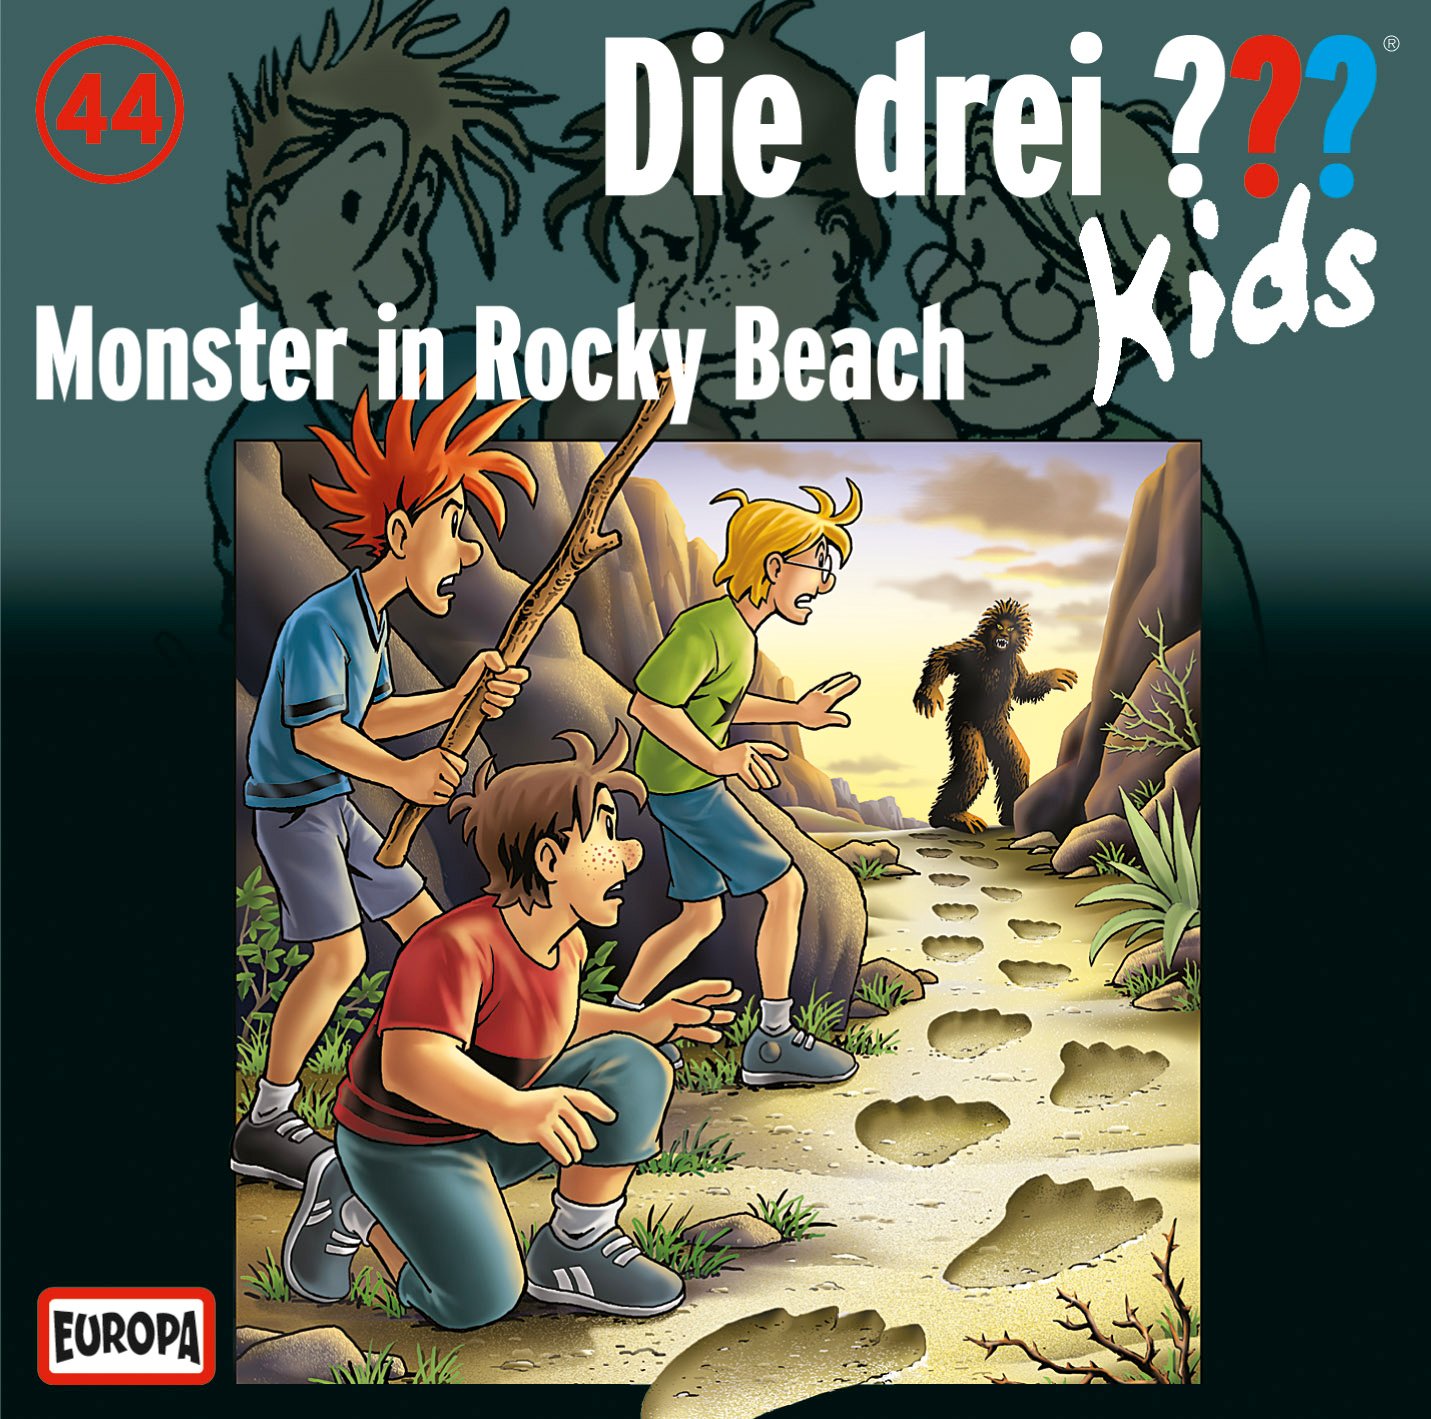 Die Drei ??? (Fragezeichen) Kids, Hörspiel-Folge 44: Monster in Rocky Beach